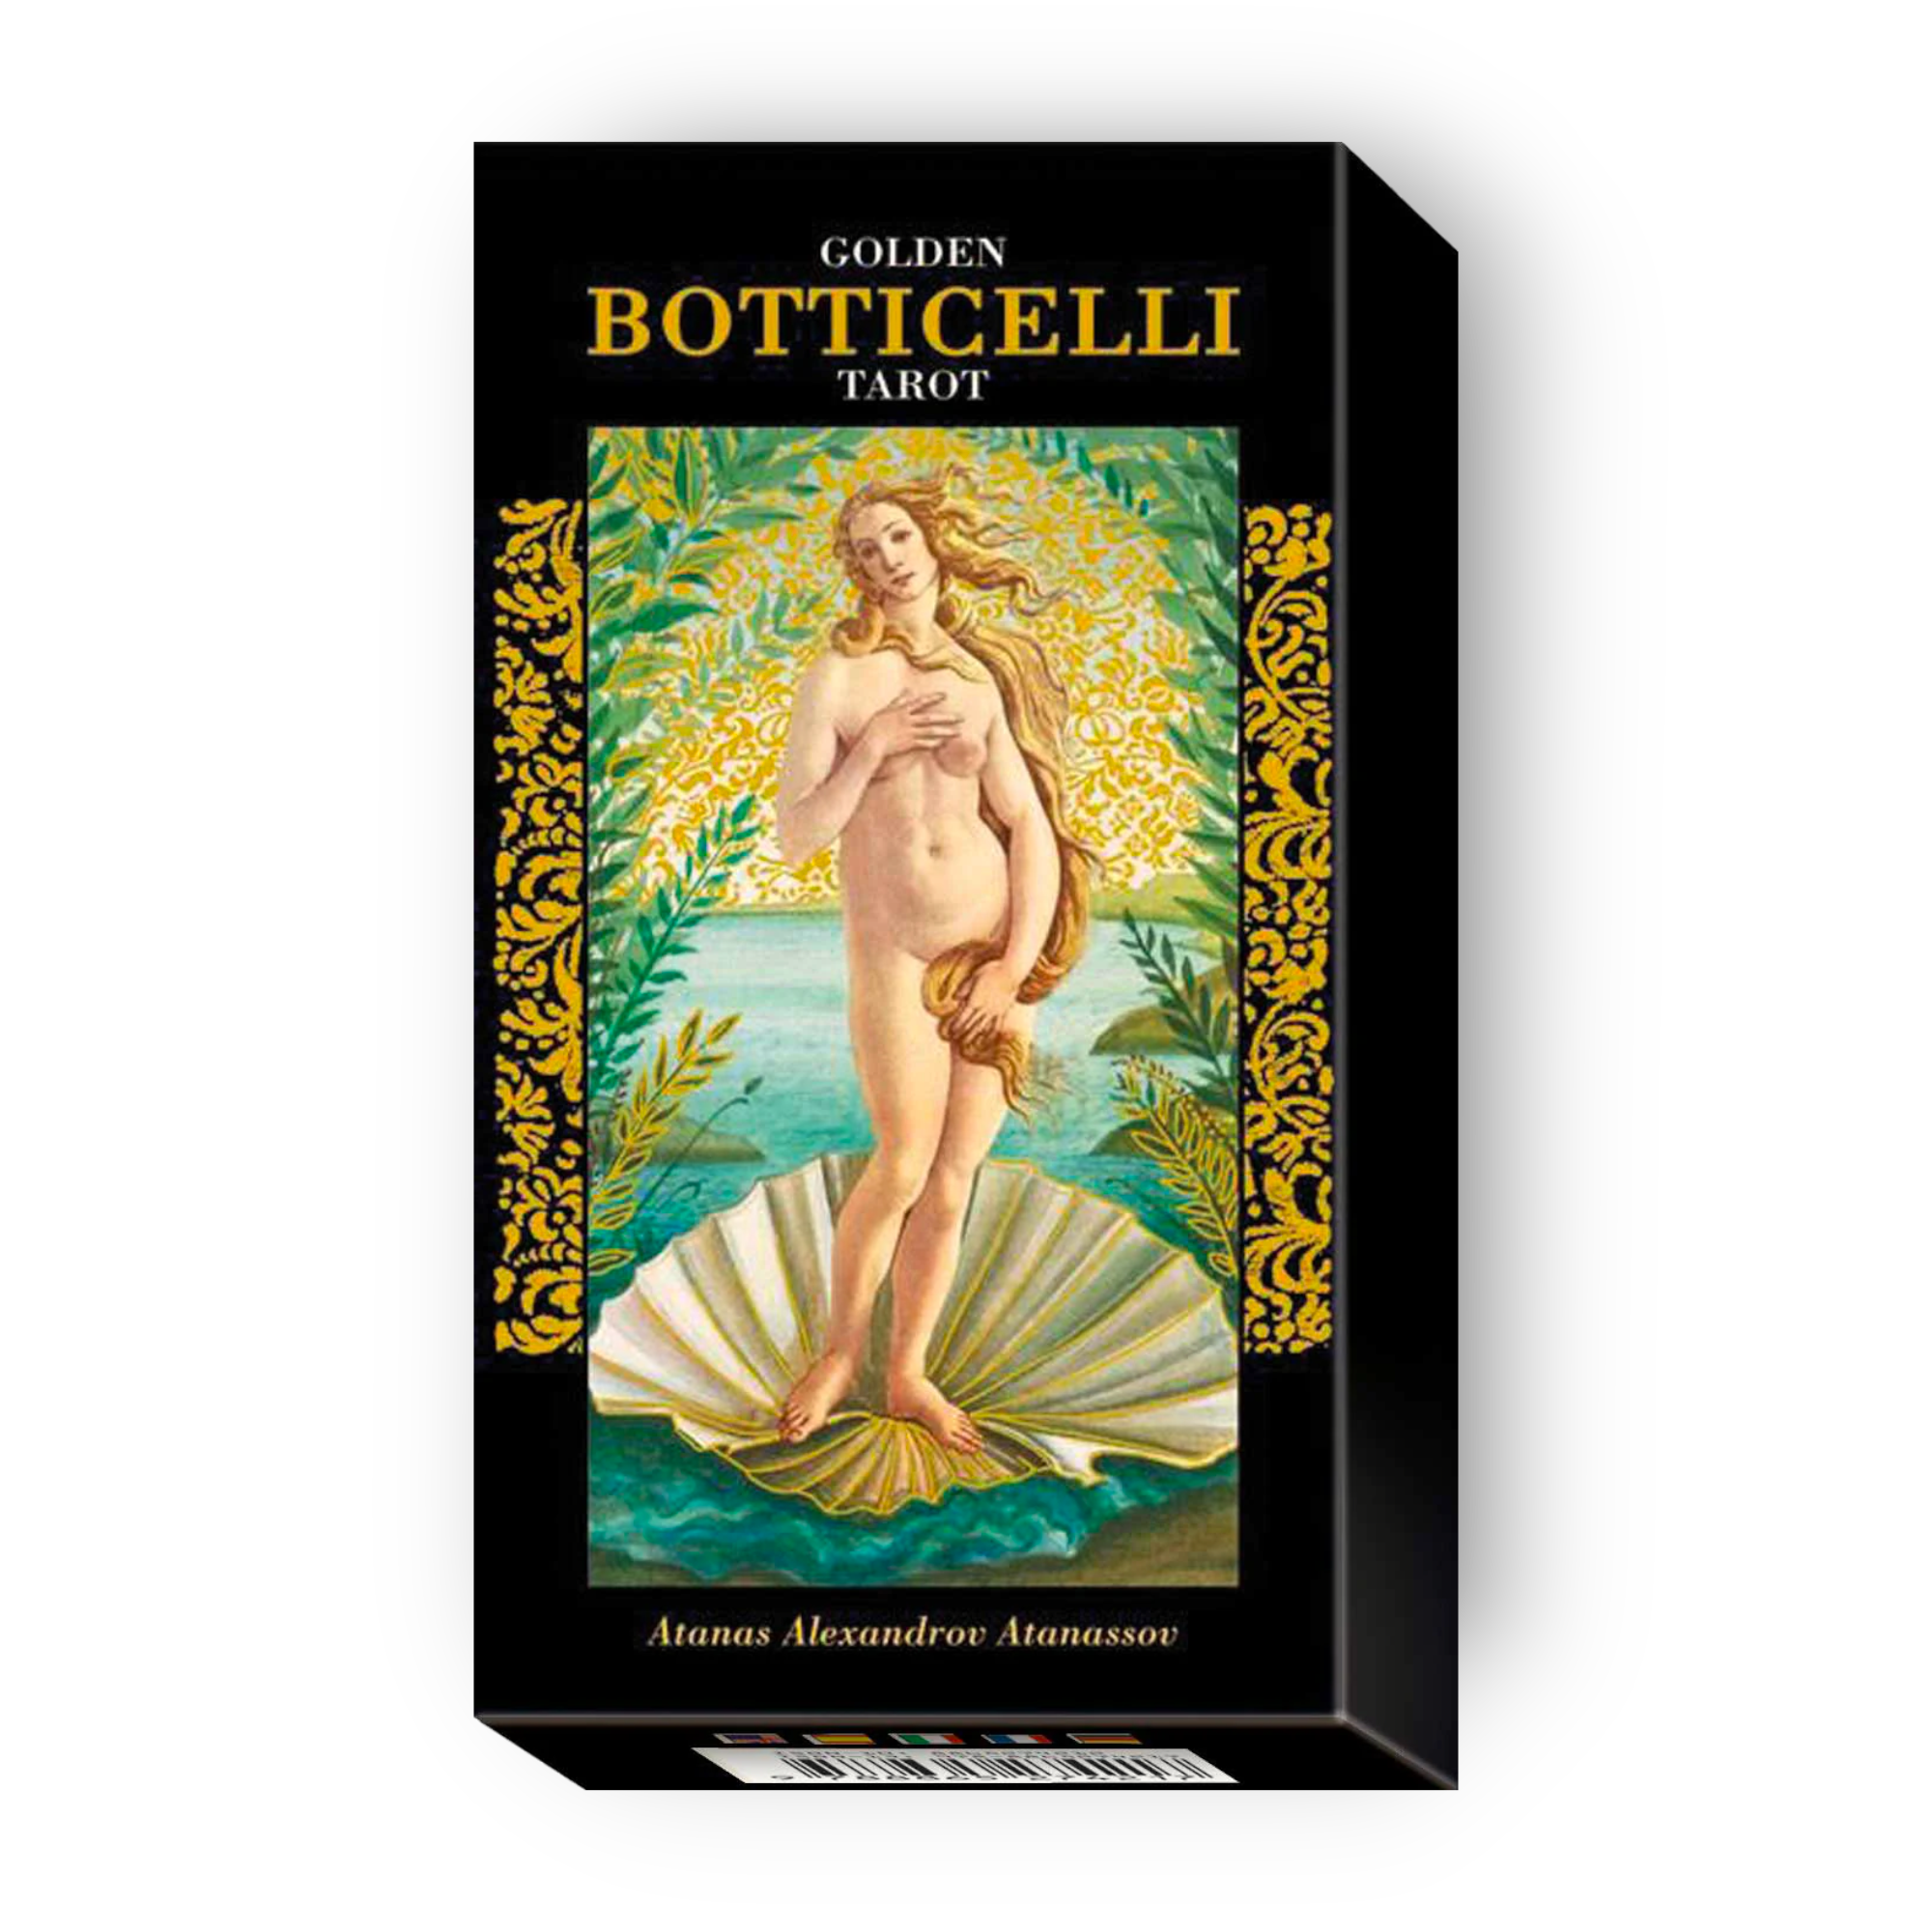 Botticelli Tarot